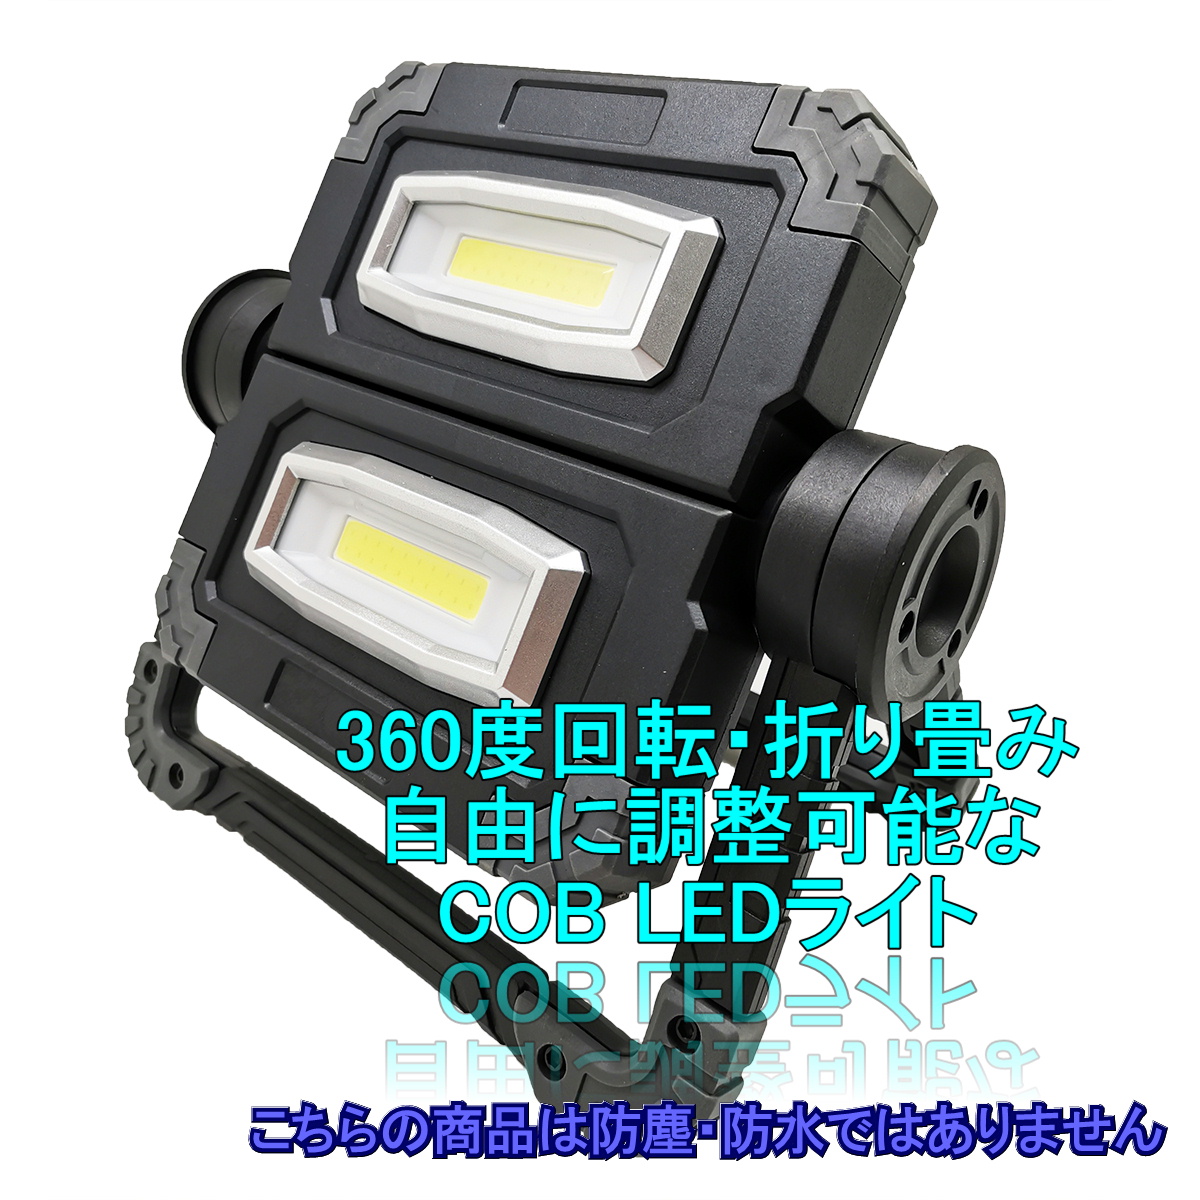 正規販売店 LED 工事作業灯 WithProject 11000lmワークライト LED